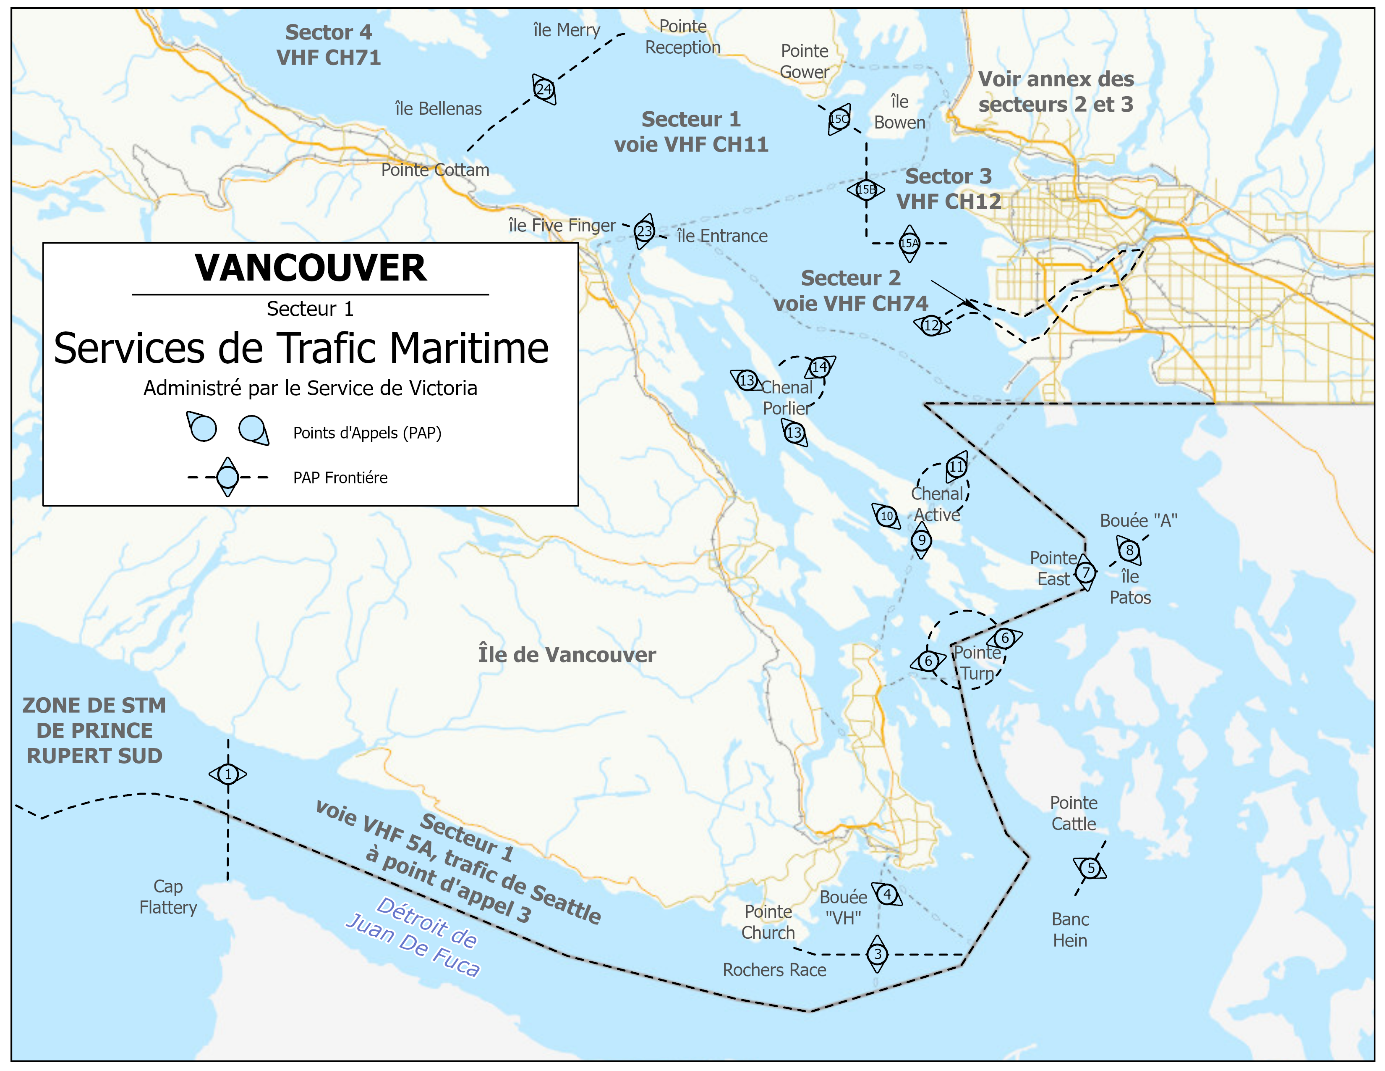 Vancouver - Service du trafic maritime - Secteur 1